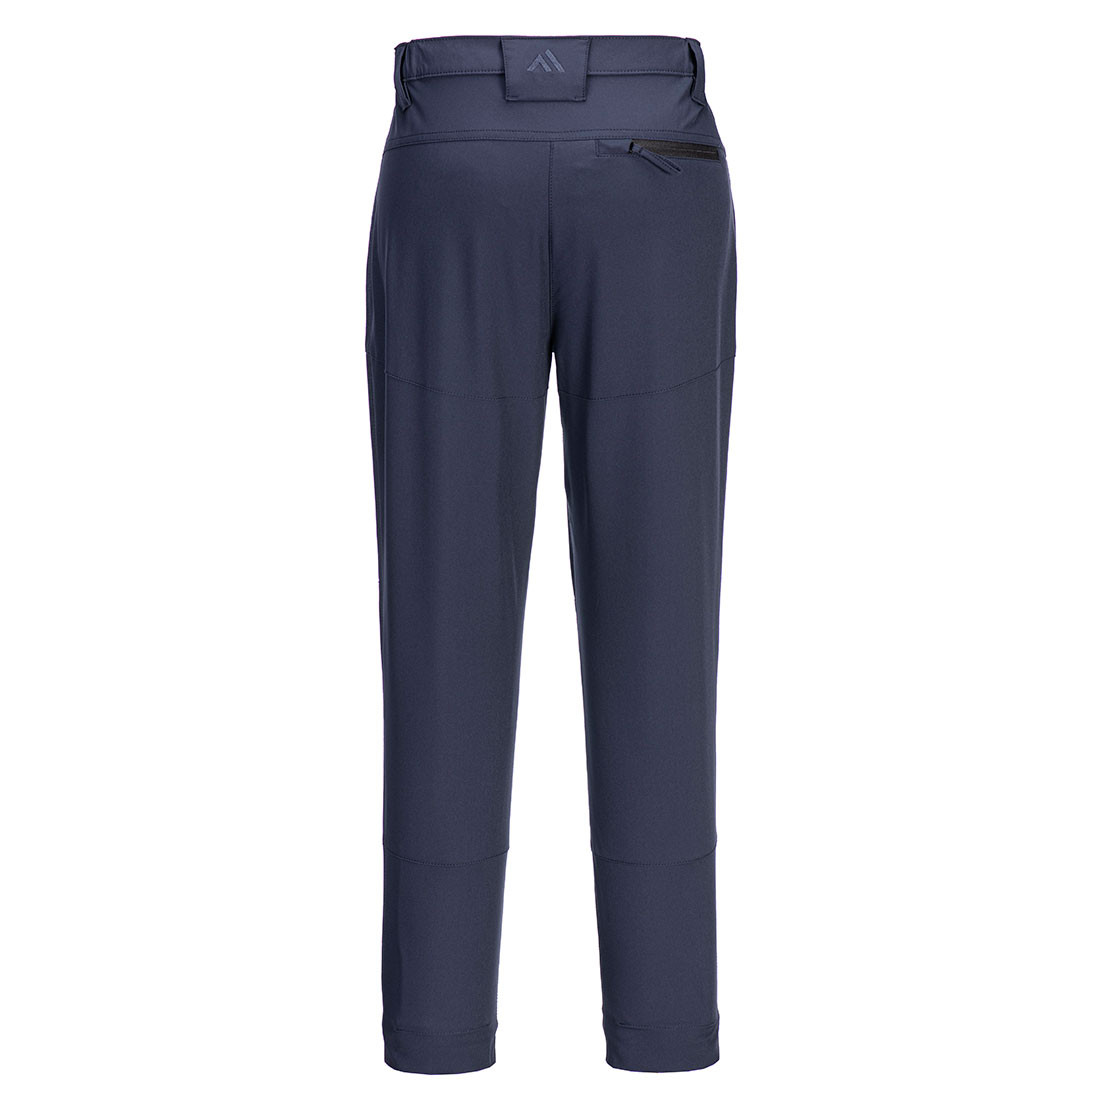 Pantalon élastique de travail WX2 pour femmes - Les vêtements de protection